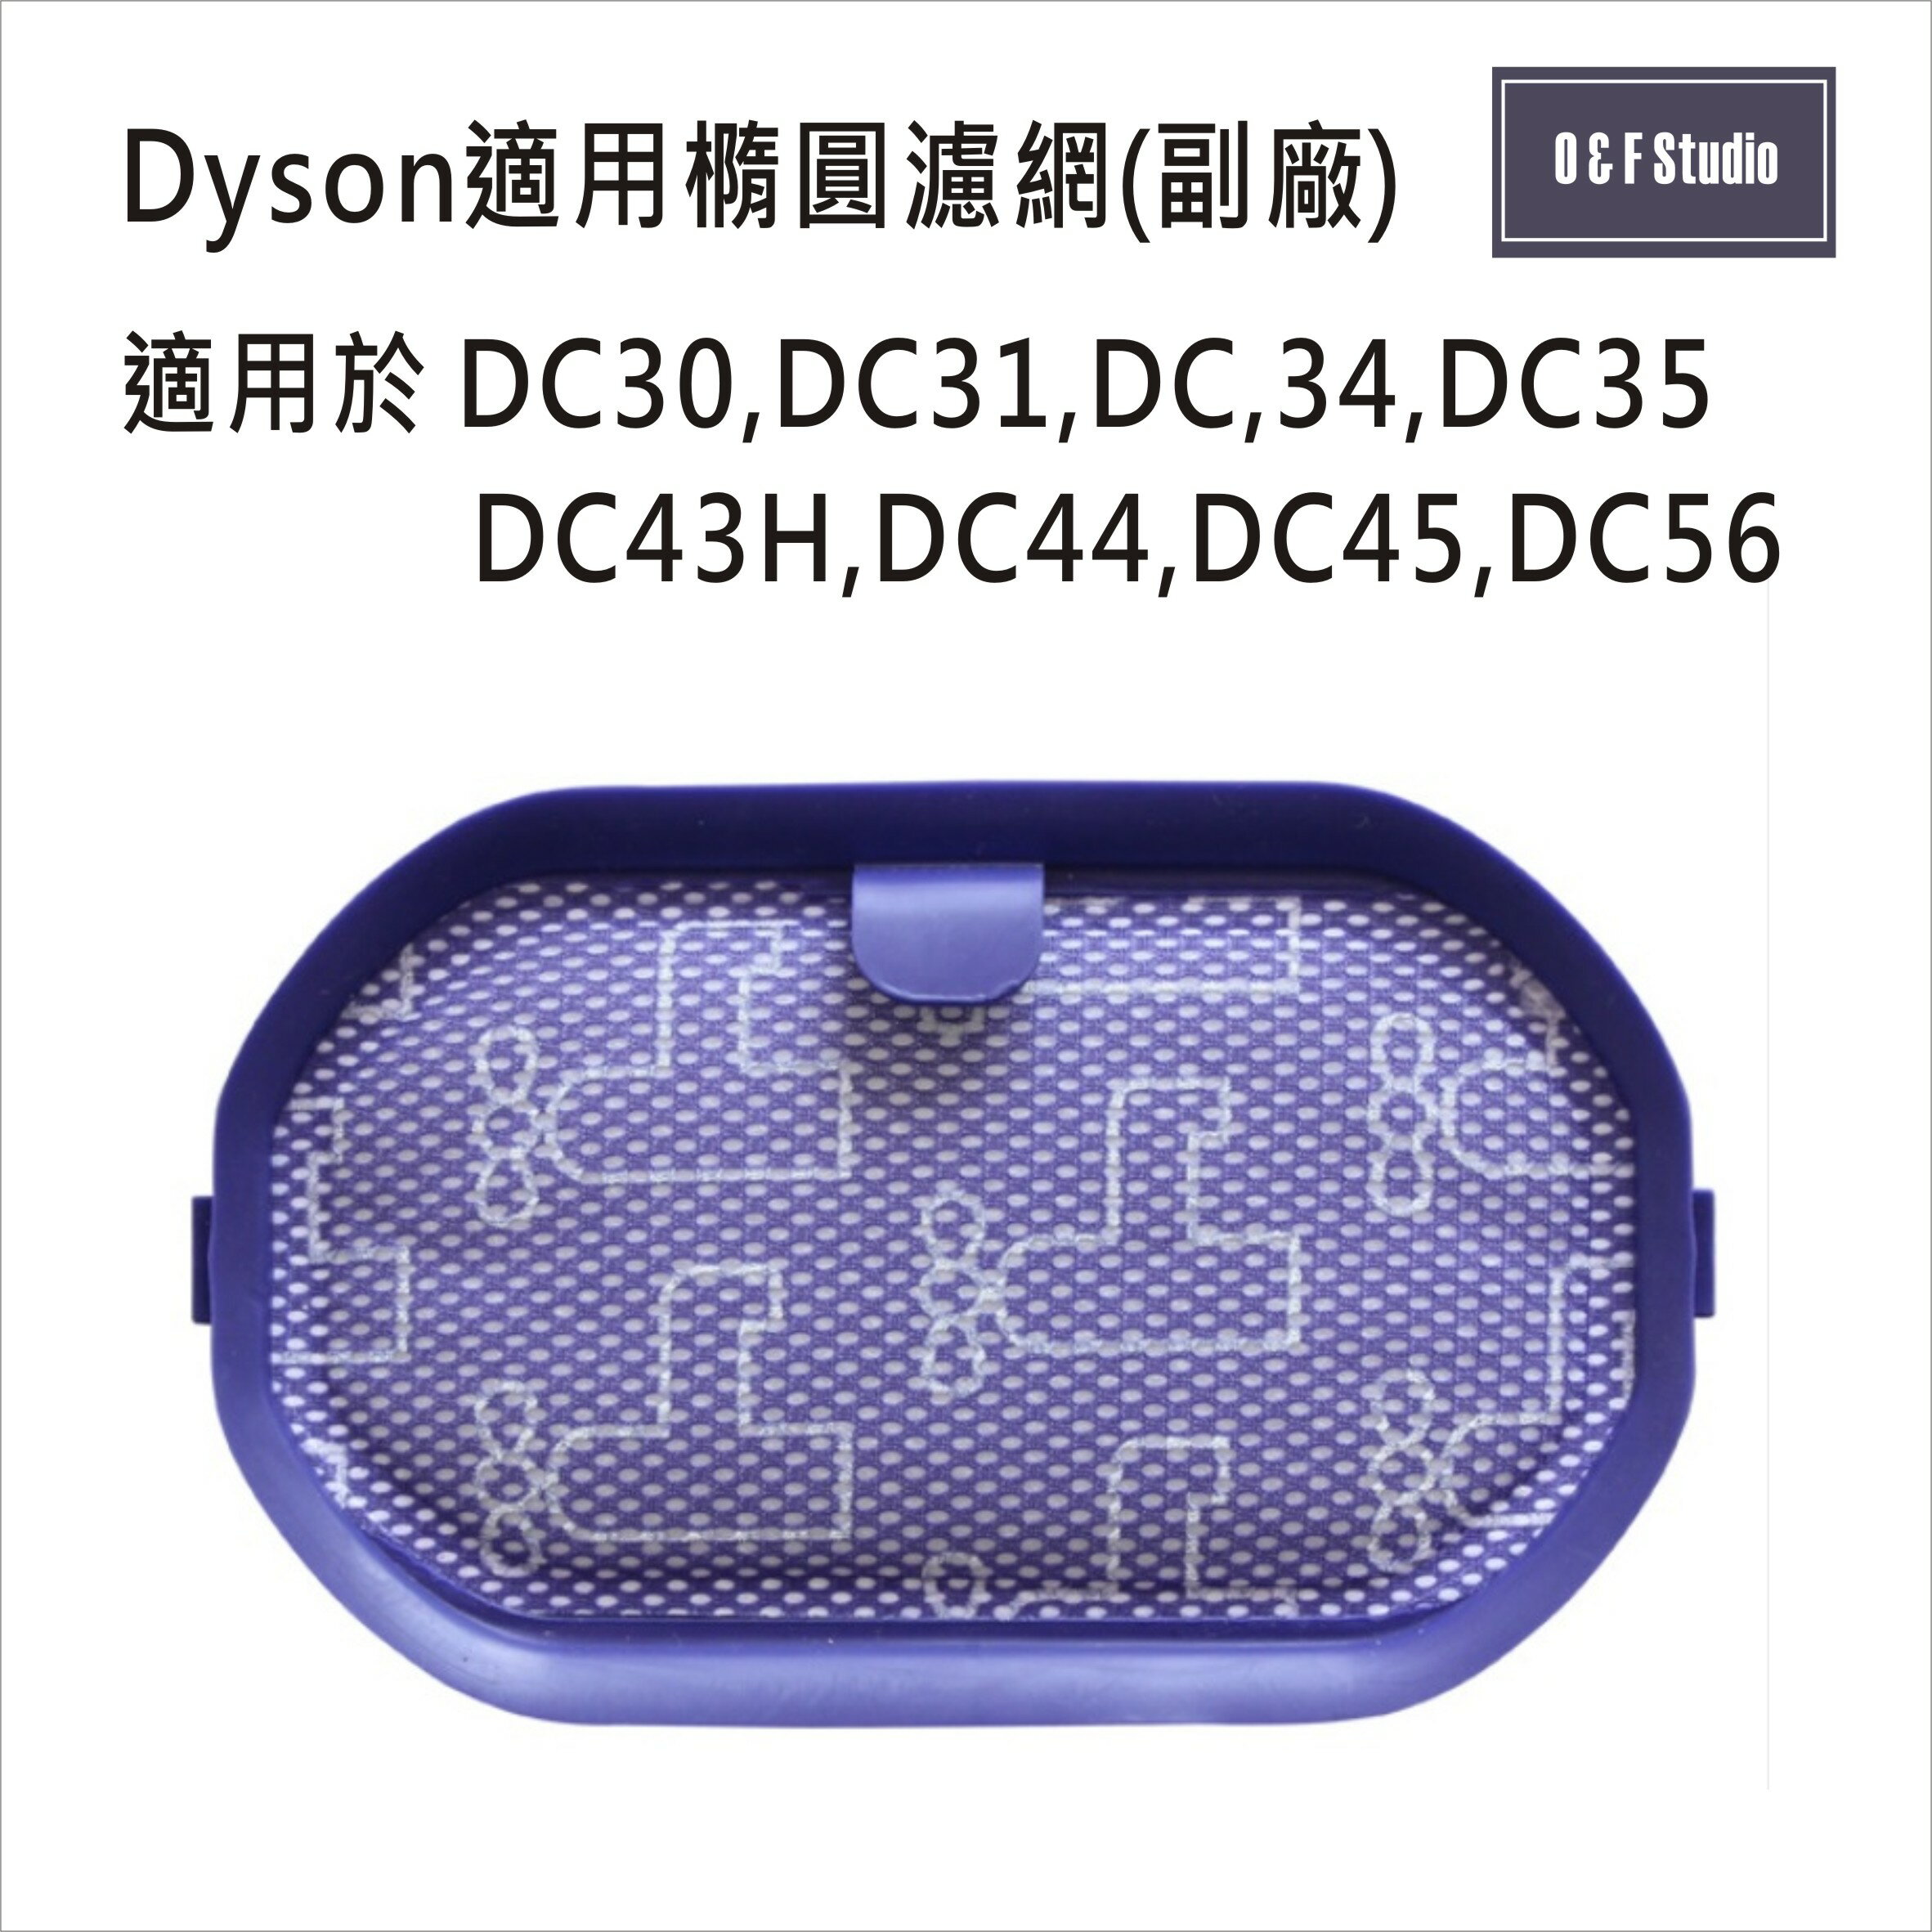 吸塵器濾網 Dyson戴森 (副廠)台灣現貨 DC30,DC31,DC34,DC35,橢圓濾網【居家達人DS018】